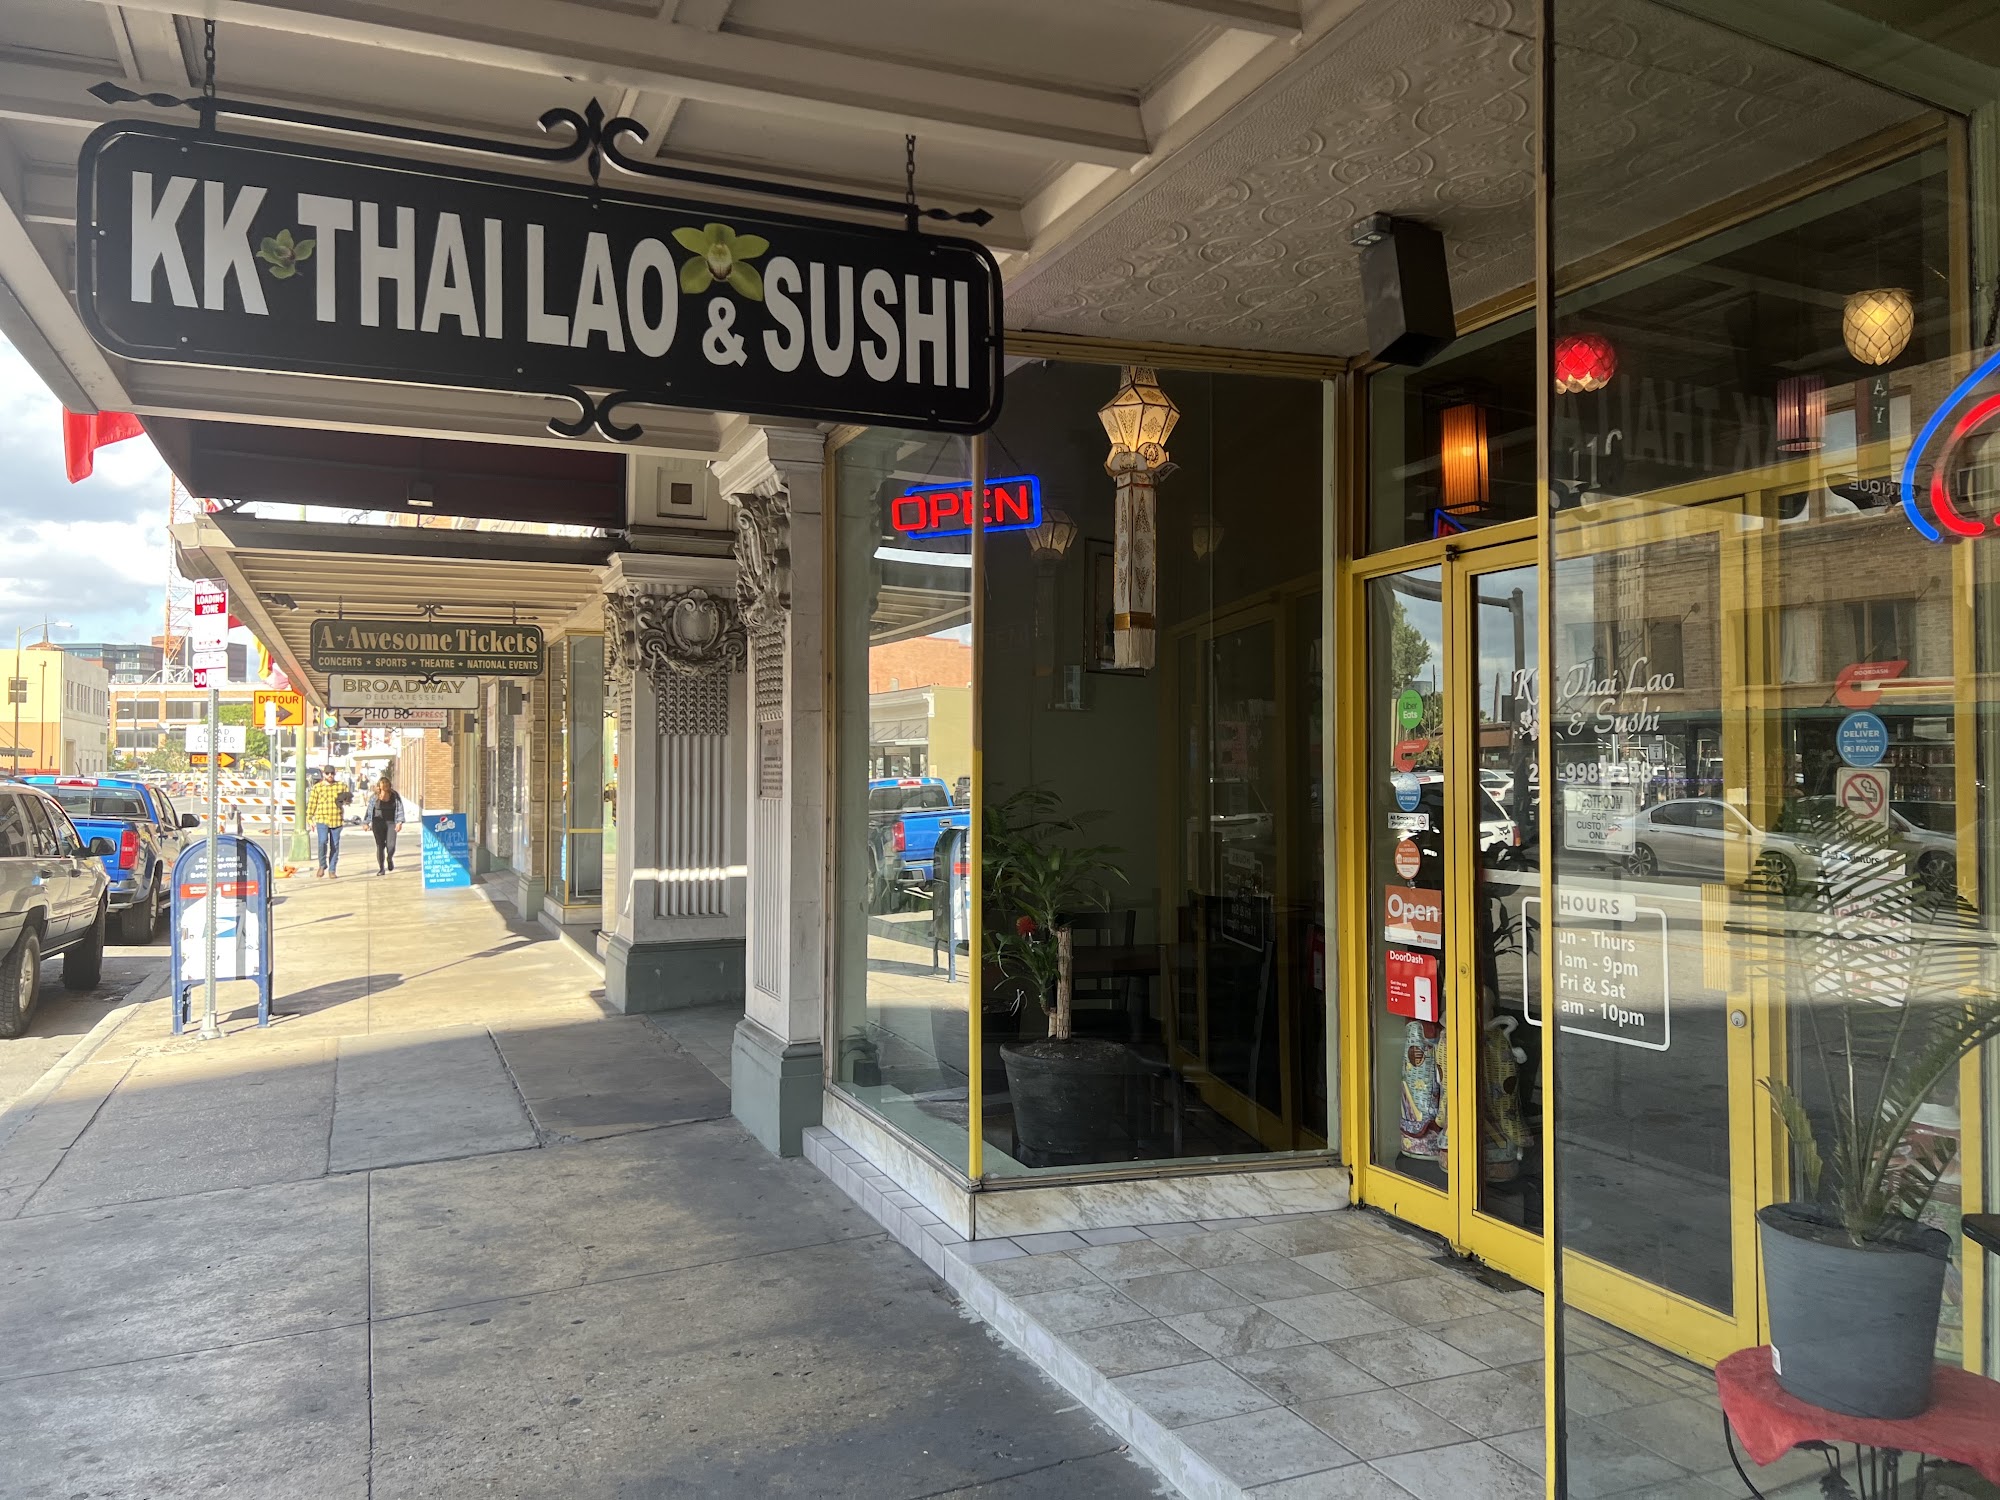 KK Thai Lao & Sushi